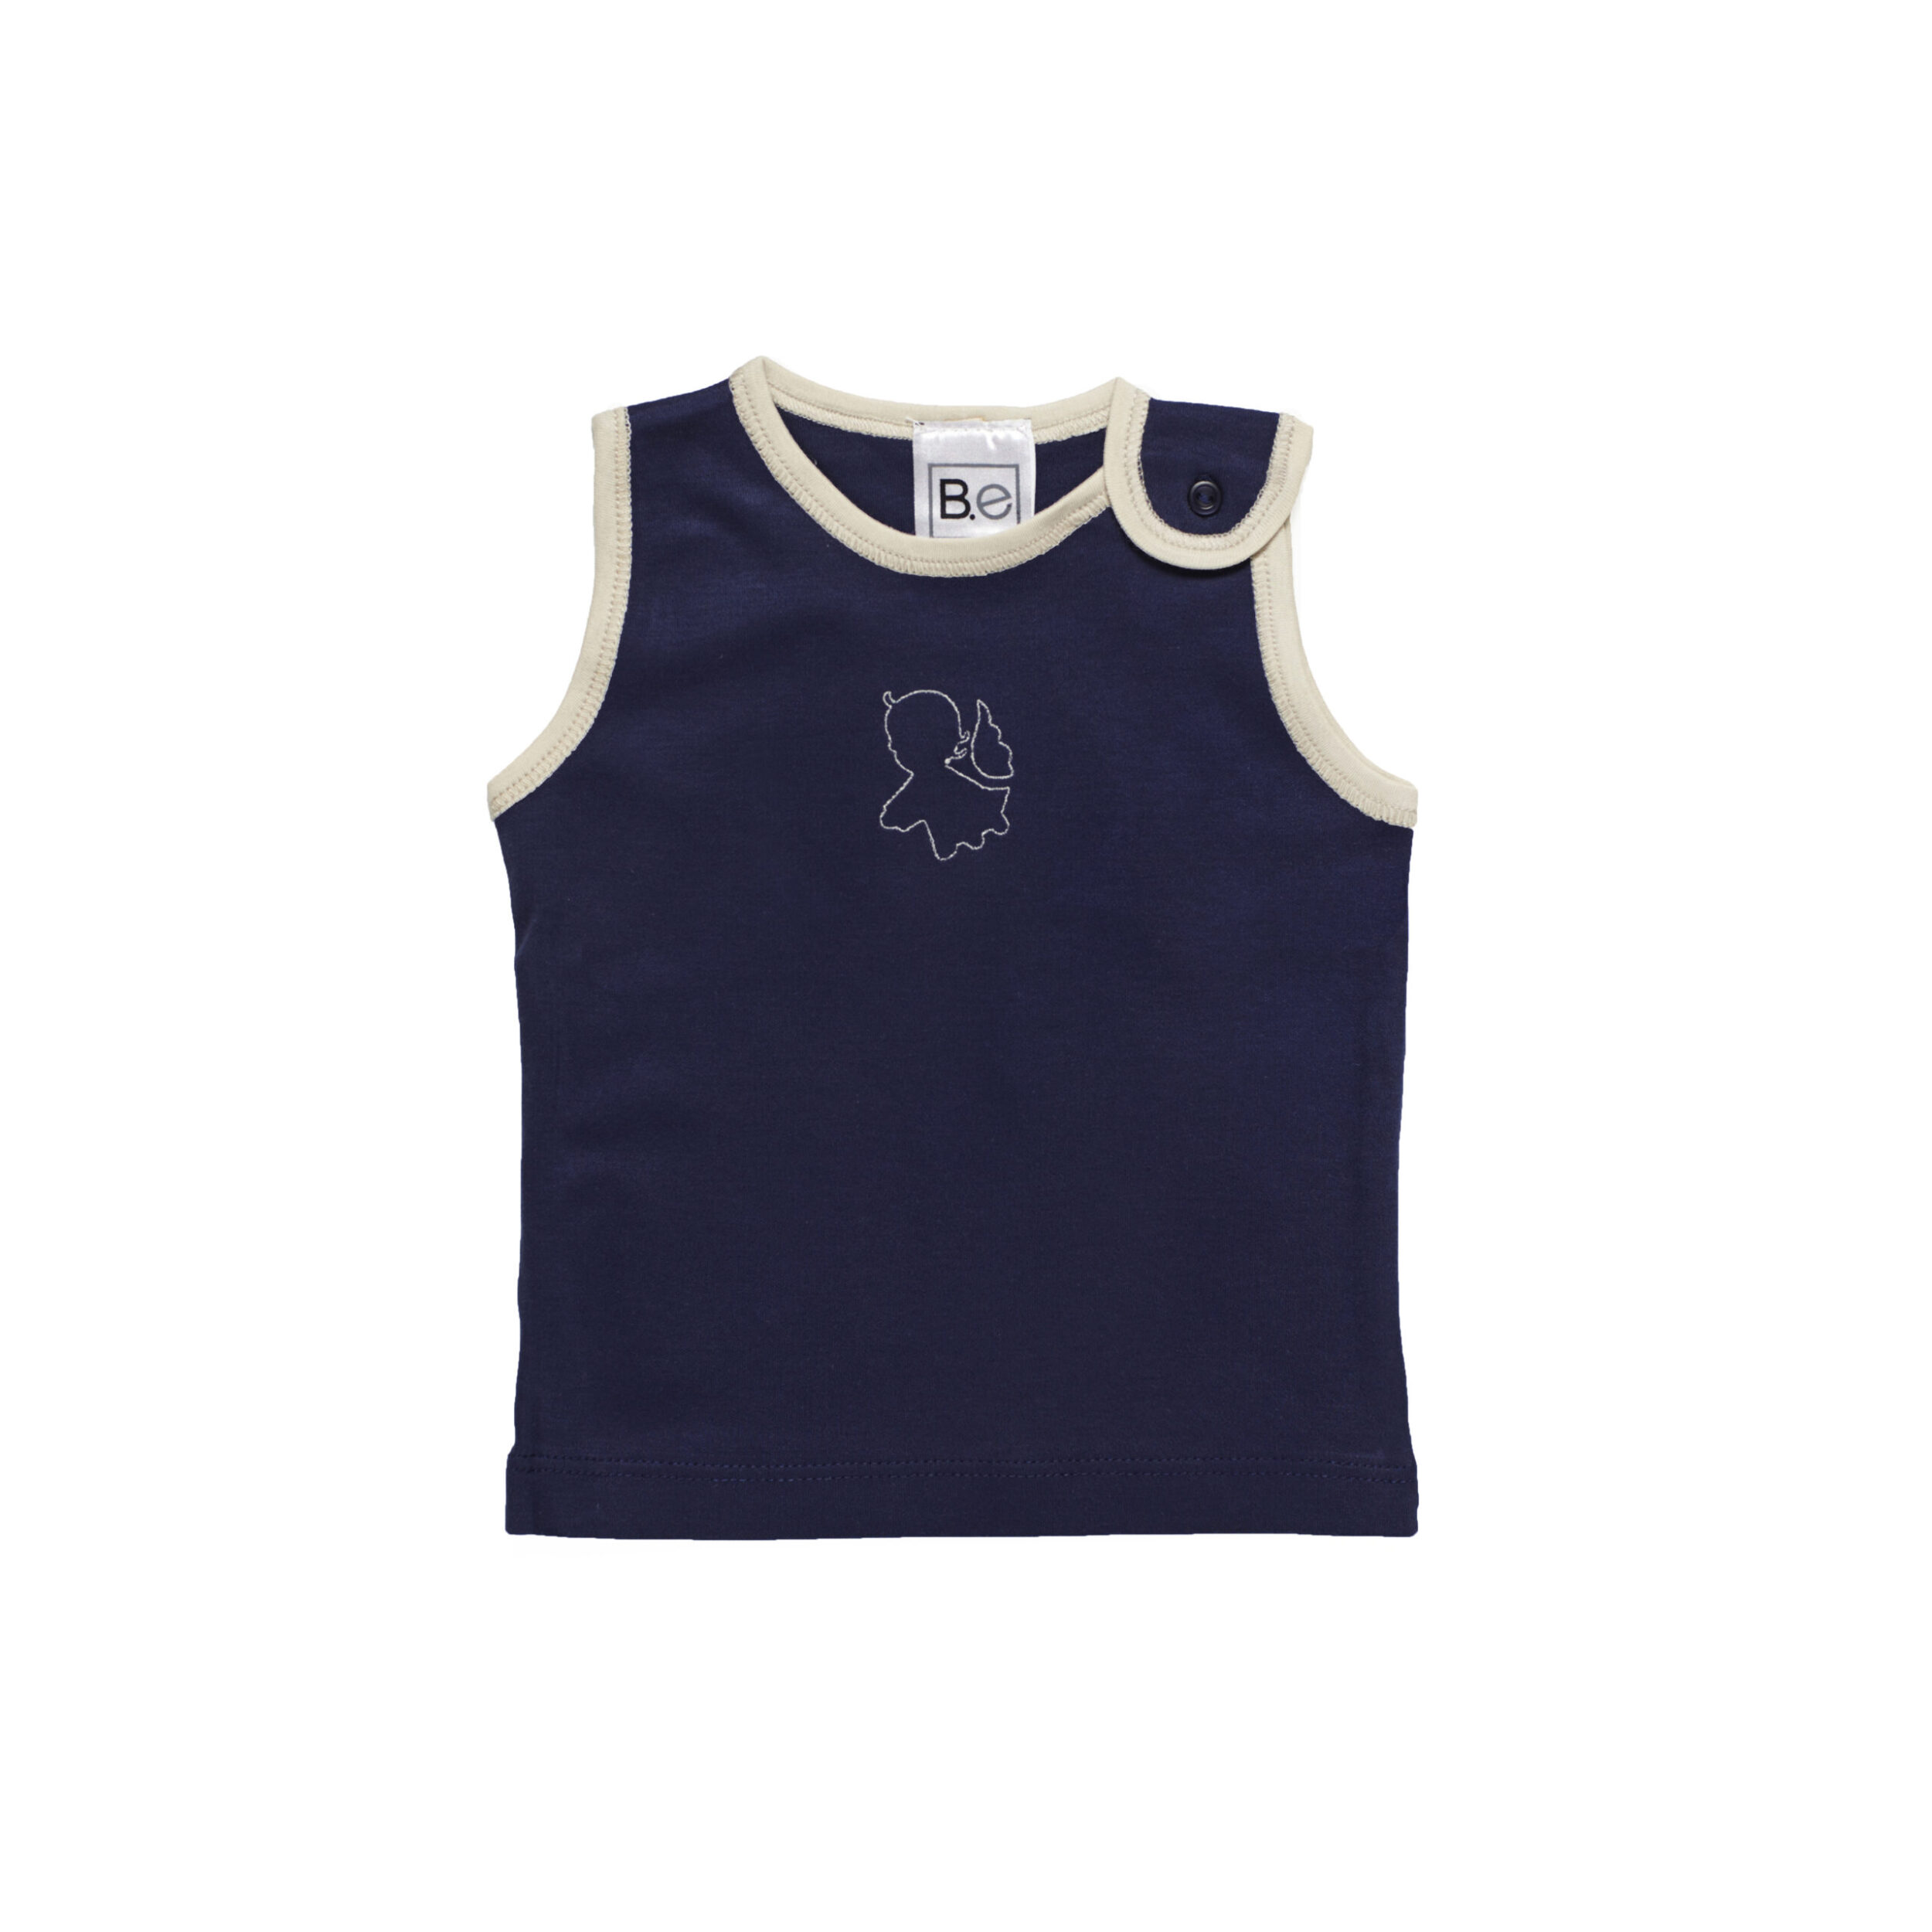 sleeveless tshirt baby organic pima cotton slowfashion quality blue